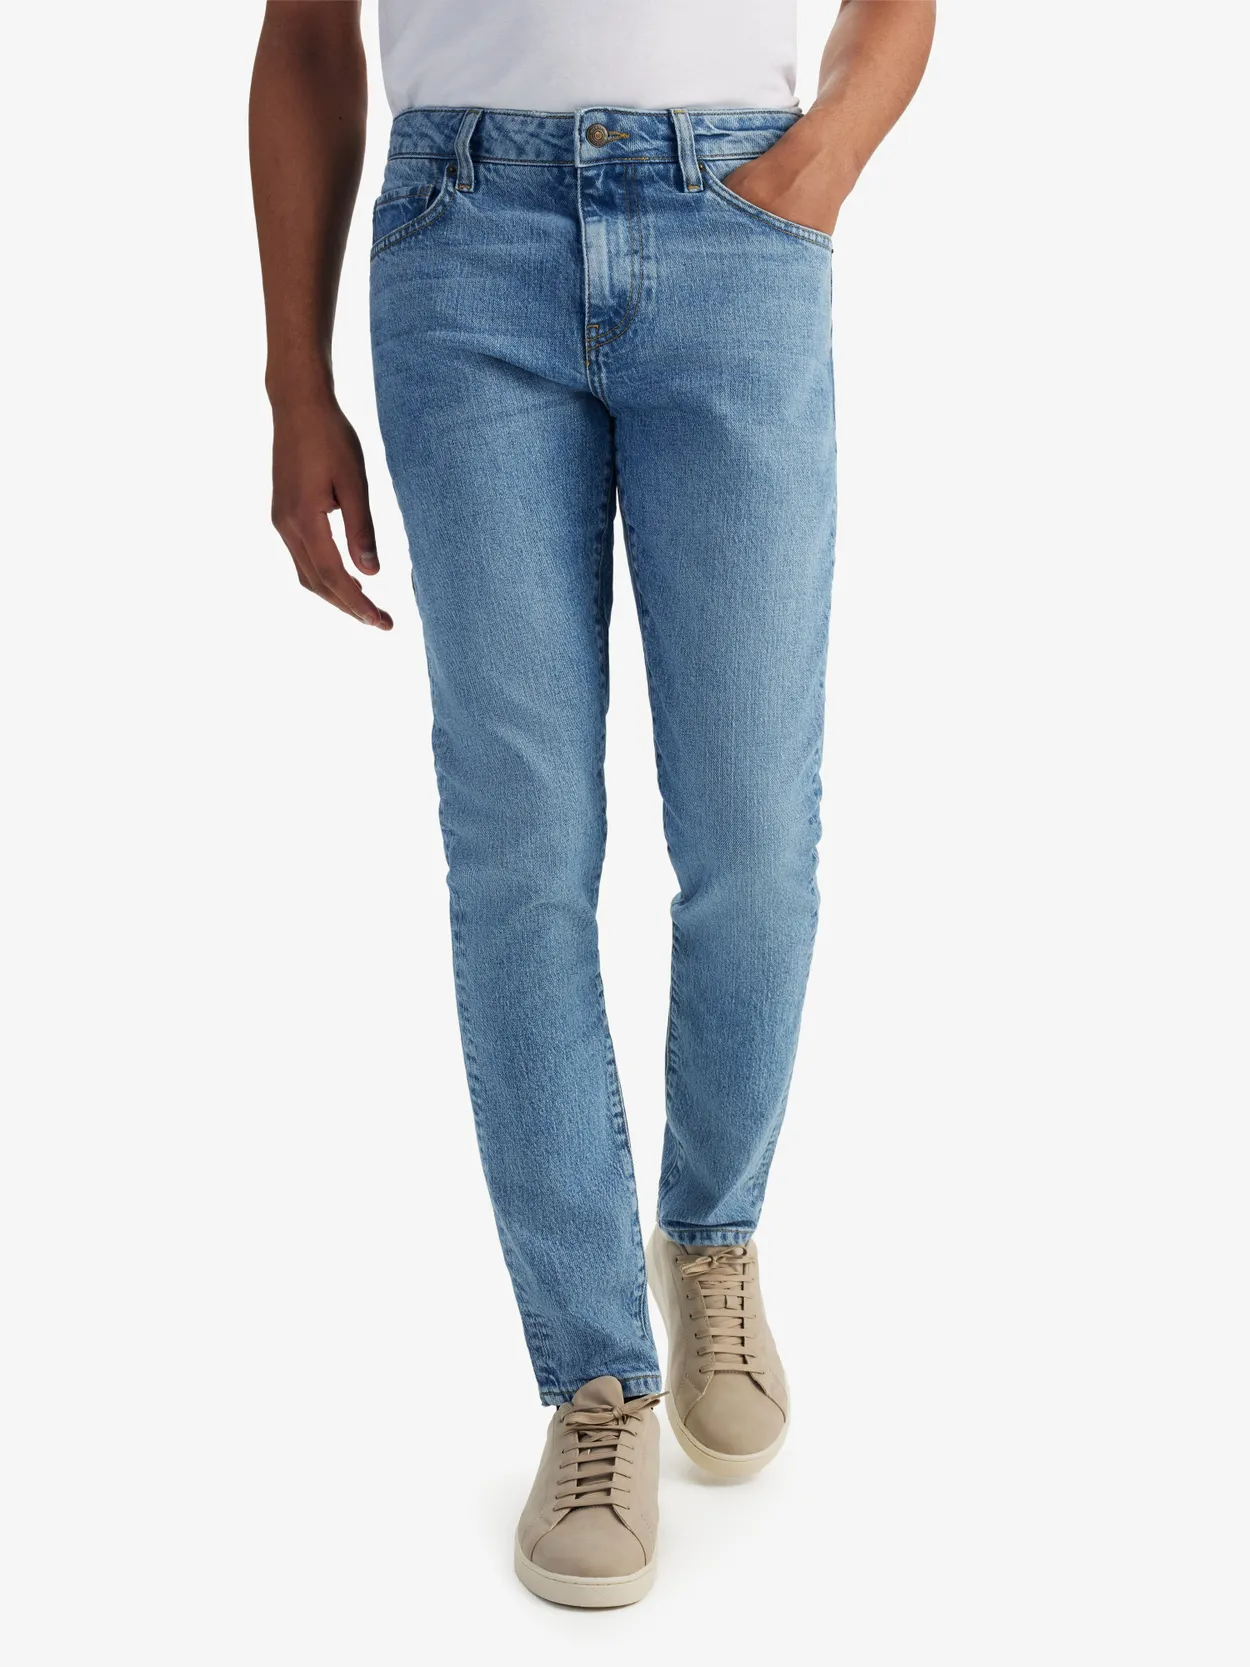 Erkek Jeans (Kot) Pantolon 